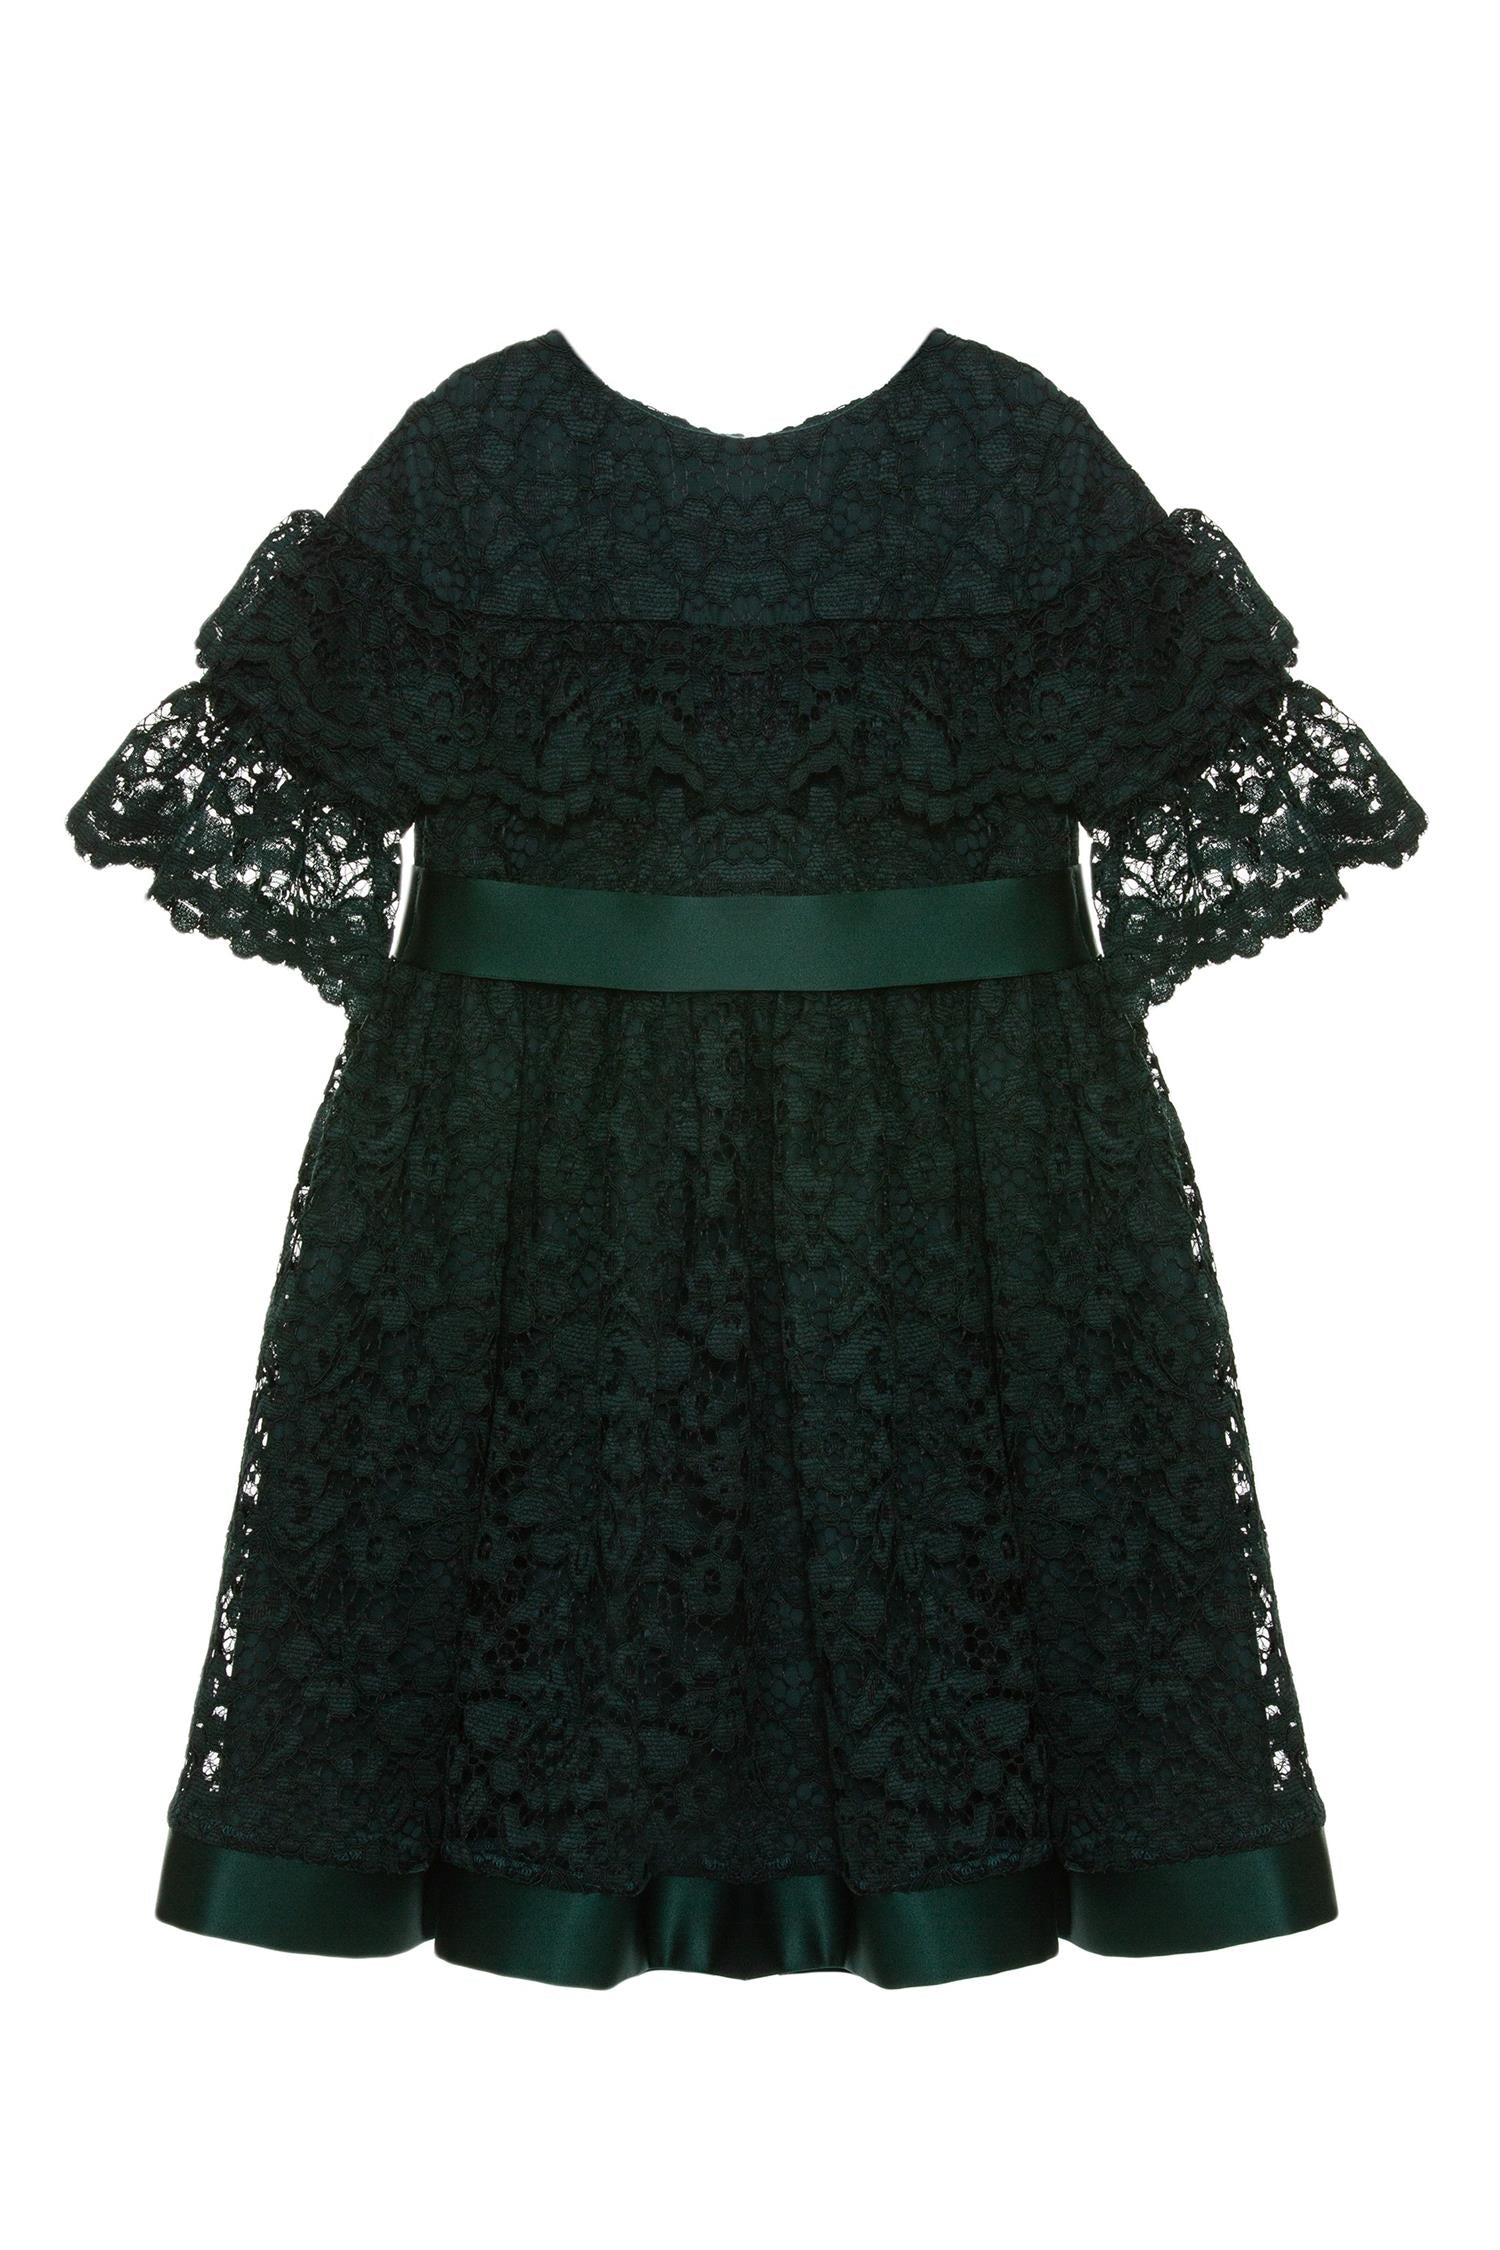 Woven Dress Emerald 4-6 år